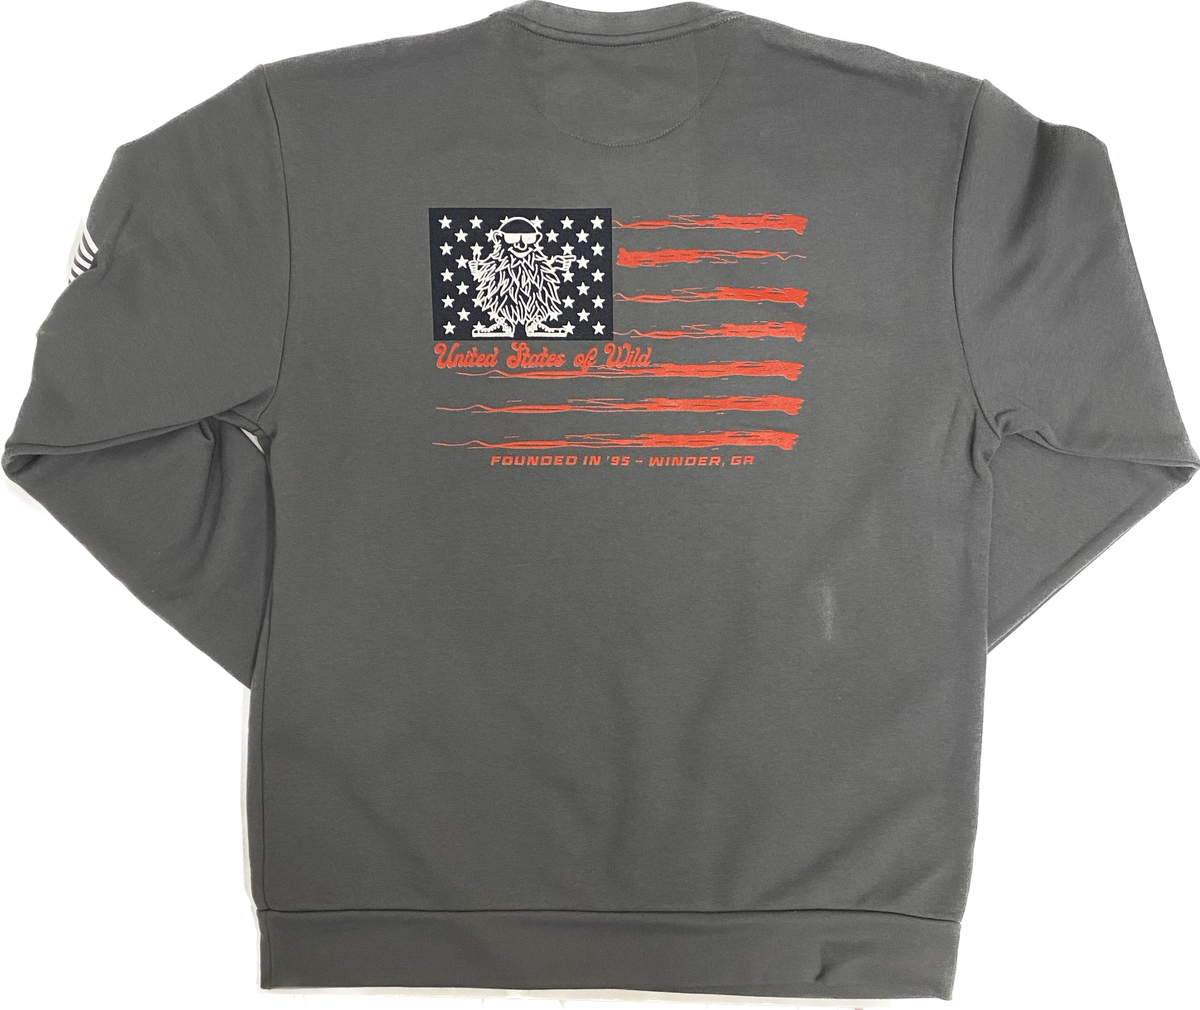 Wild Willies- United States of Wild Unisex Sweatshirt